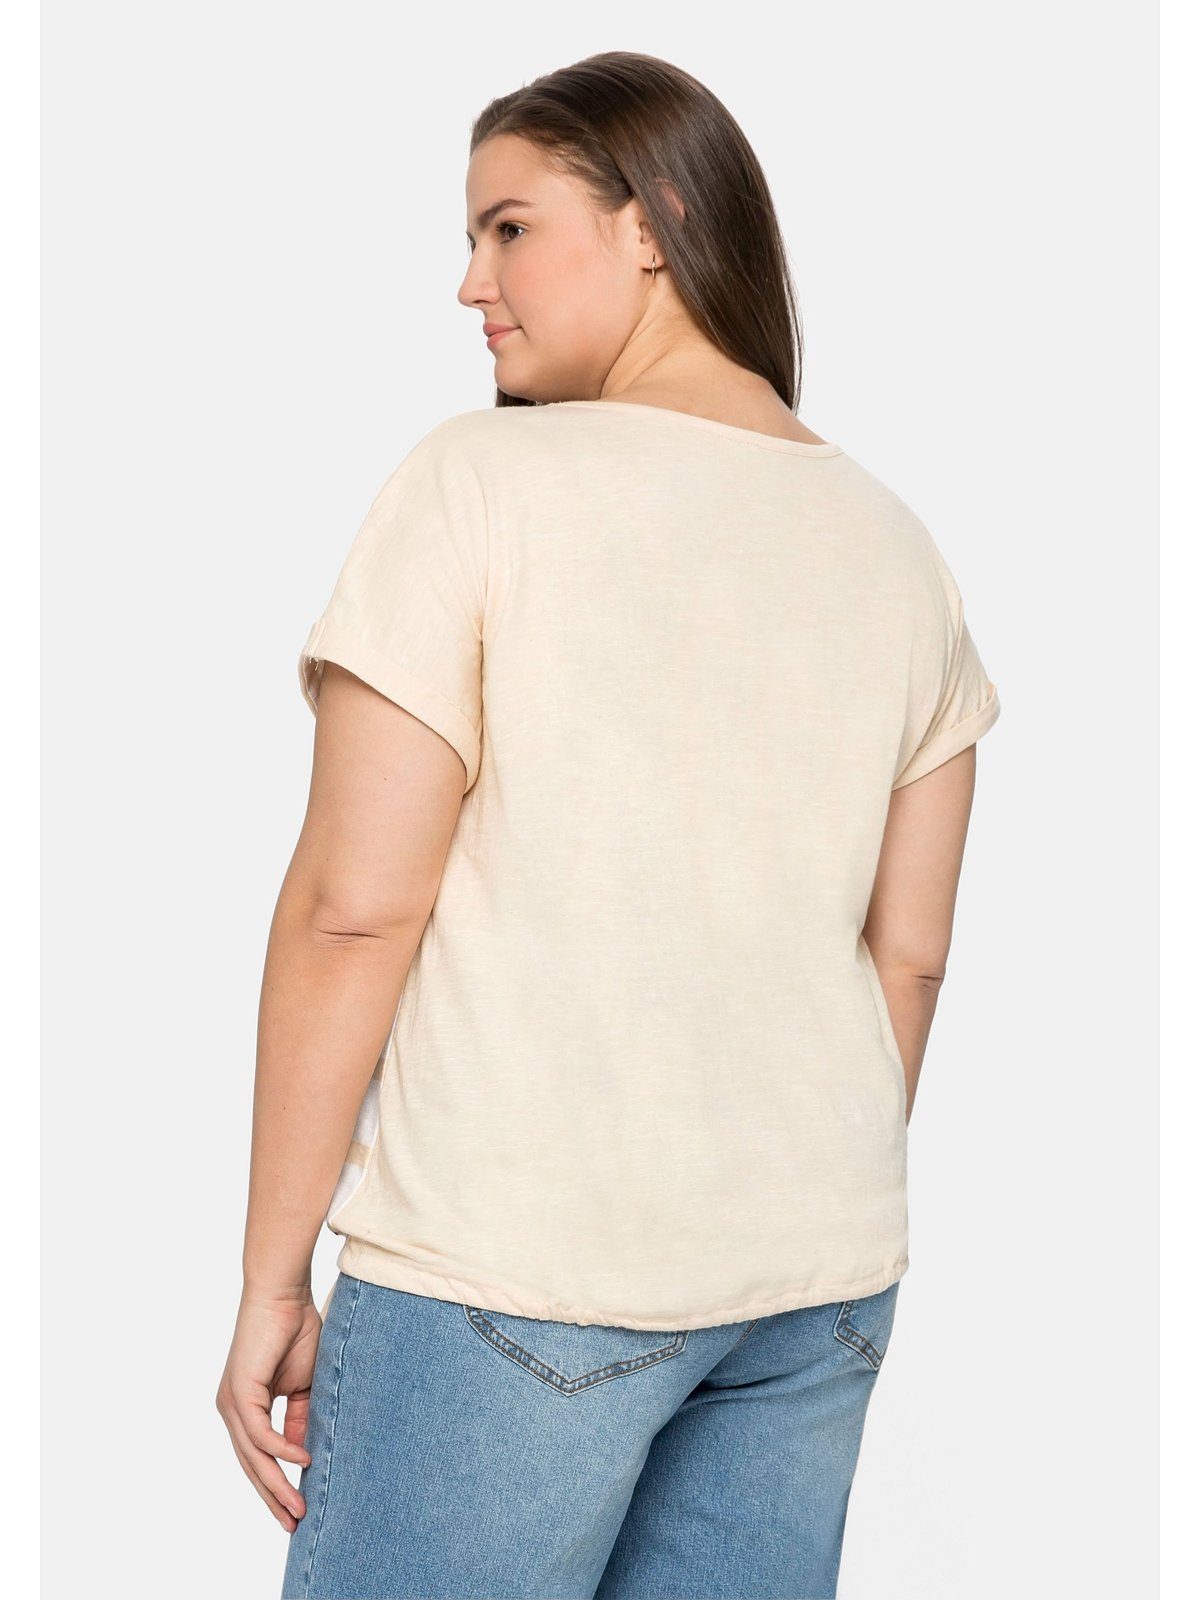 Sheego T-Shirt Große Größen mit Streifenprint und natur vorn Tunnelzug